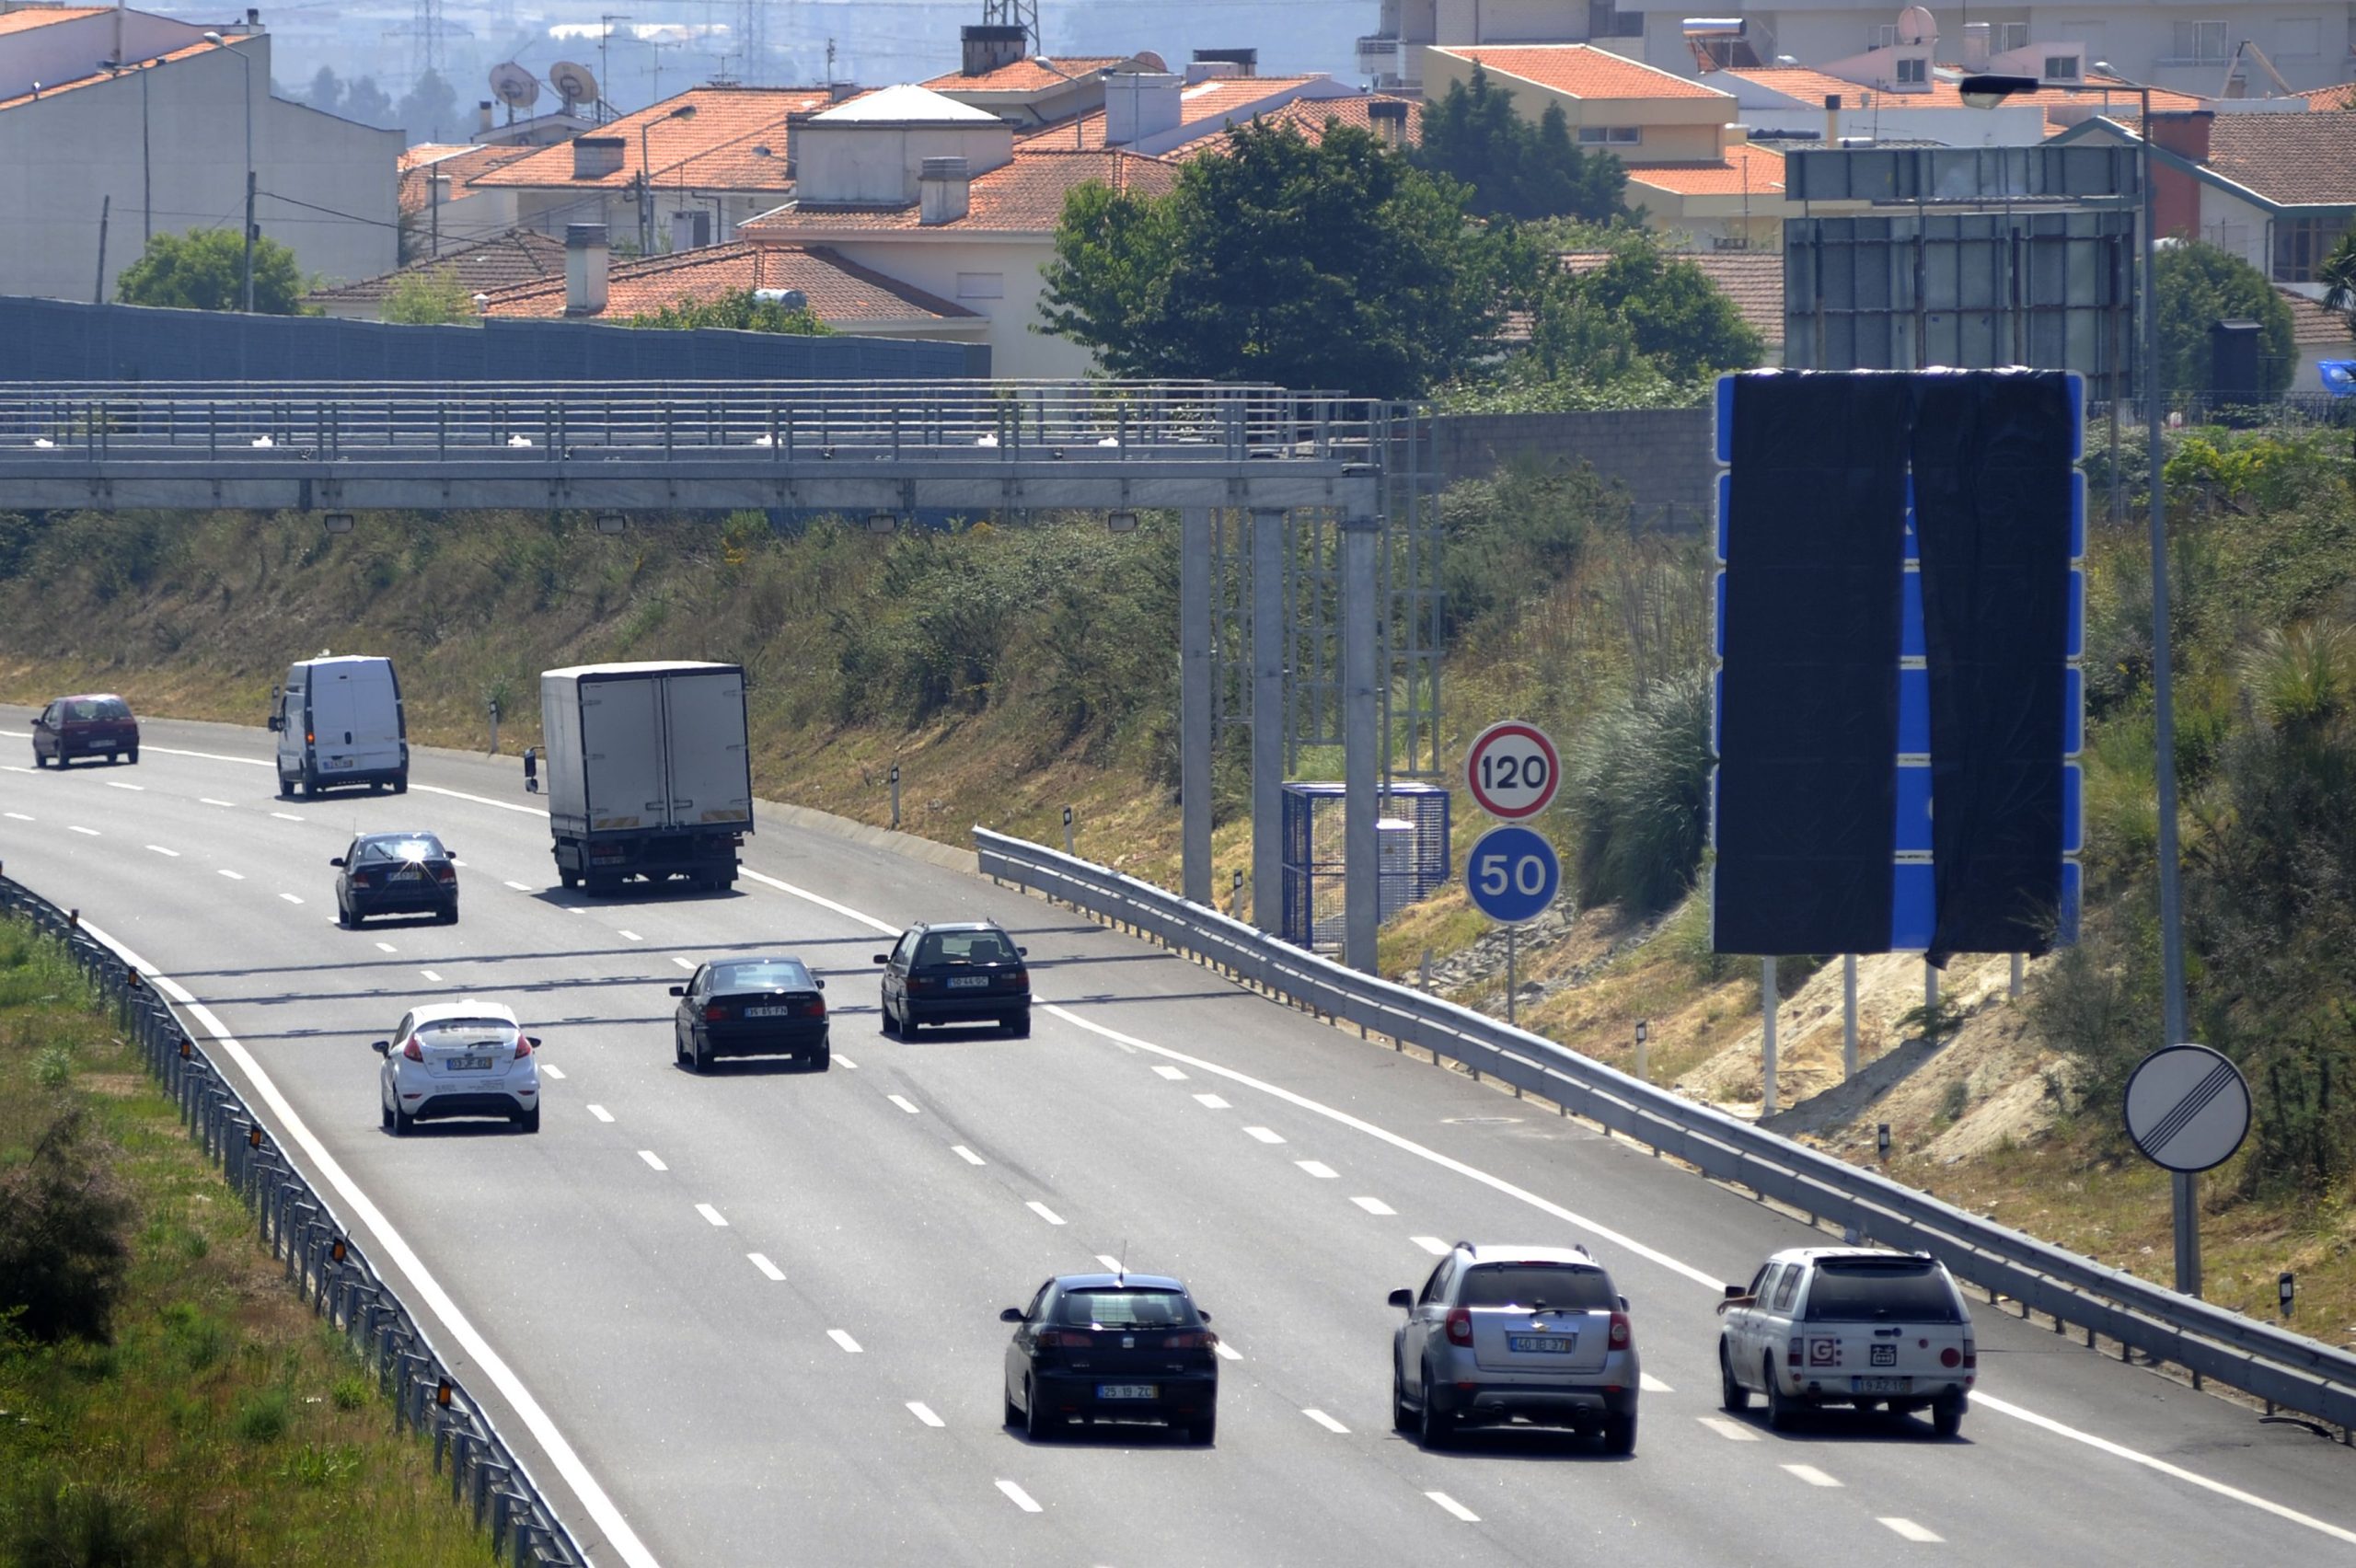 Estradas de Portugal investe 1,2 milhões na melhoria da sinalização rodoviária